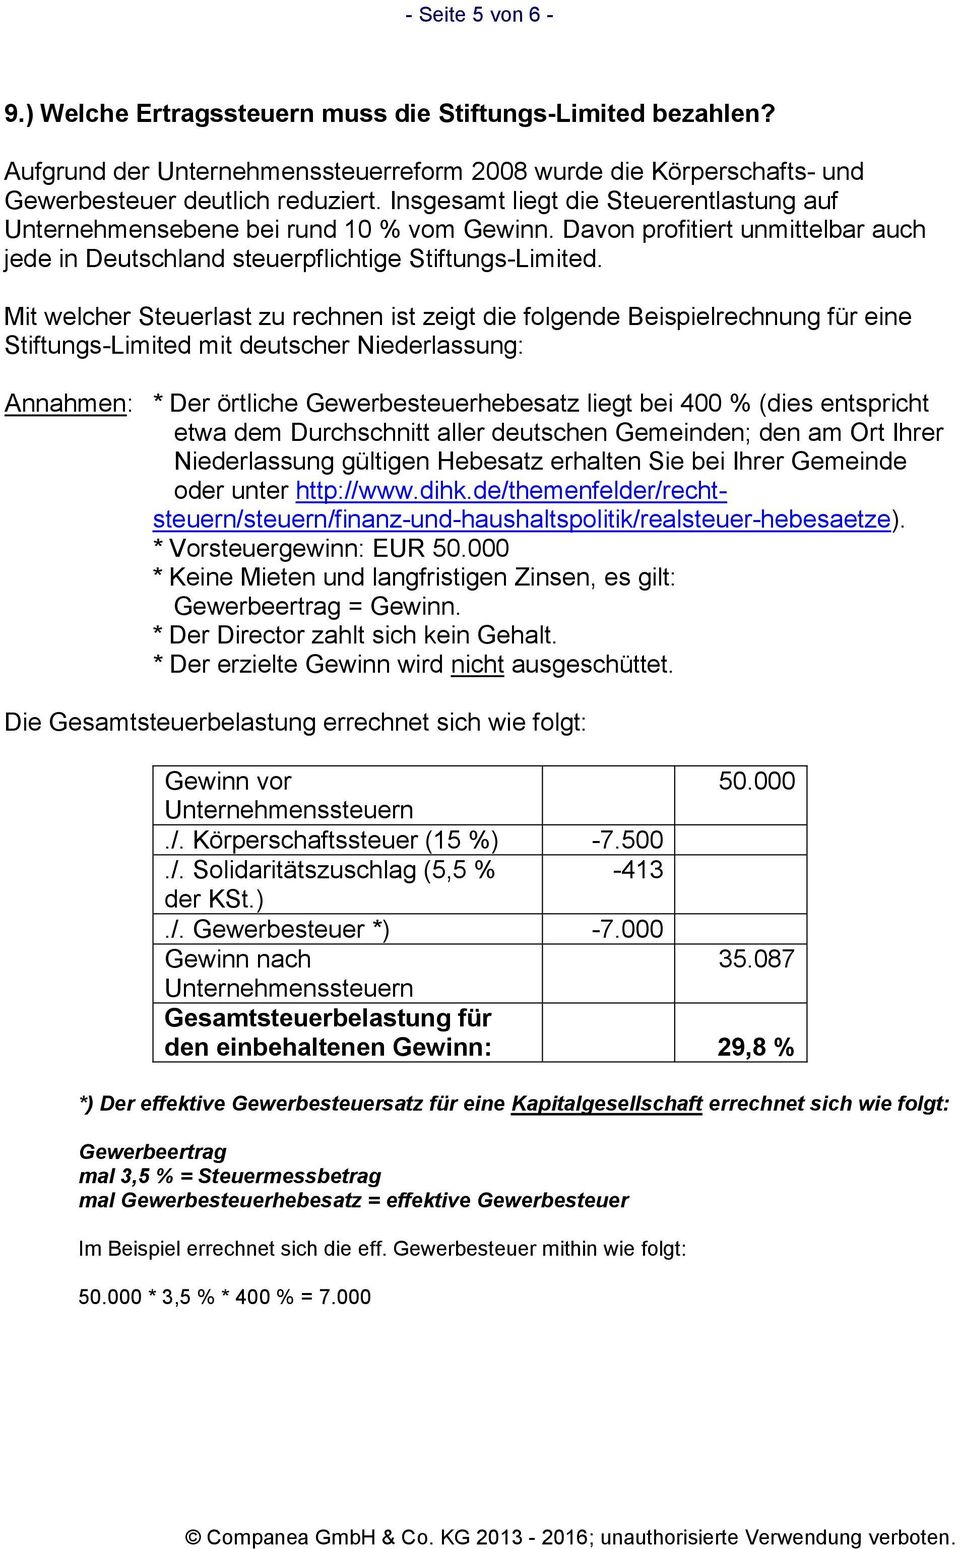 Mit welcher Steuerlast zu rechnen ist zeigt die folgende Beispielrechnung für eine Stiftungs-Limited mit deutscher Niederlassung: Annahmen: * Der örtliche Gewerbesteuerhebesatz liegt bei 400 % (dies